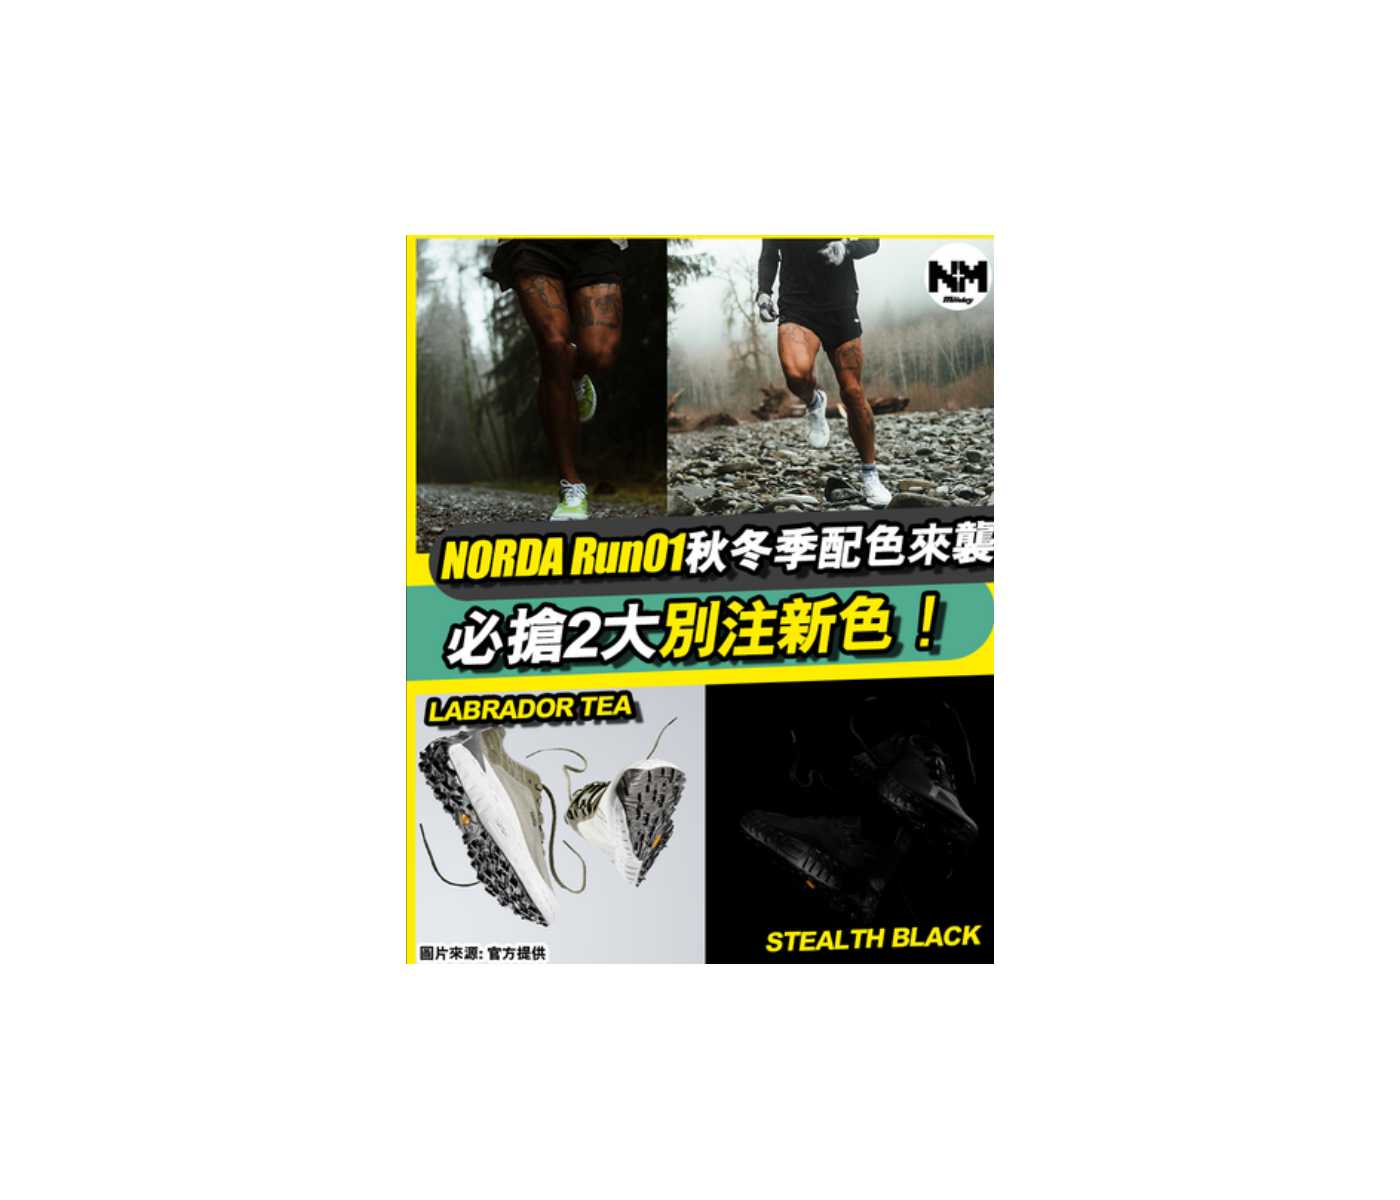 [#潮人潮物] 跑鞋新貴NORDA 001 自登陸香港旋即引起風潮